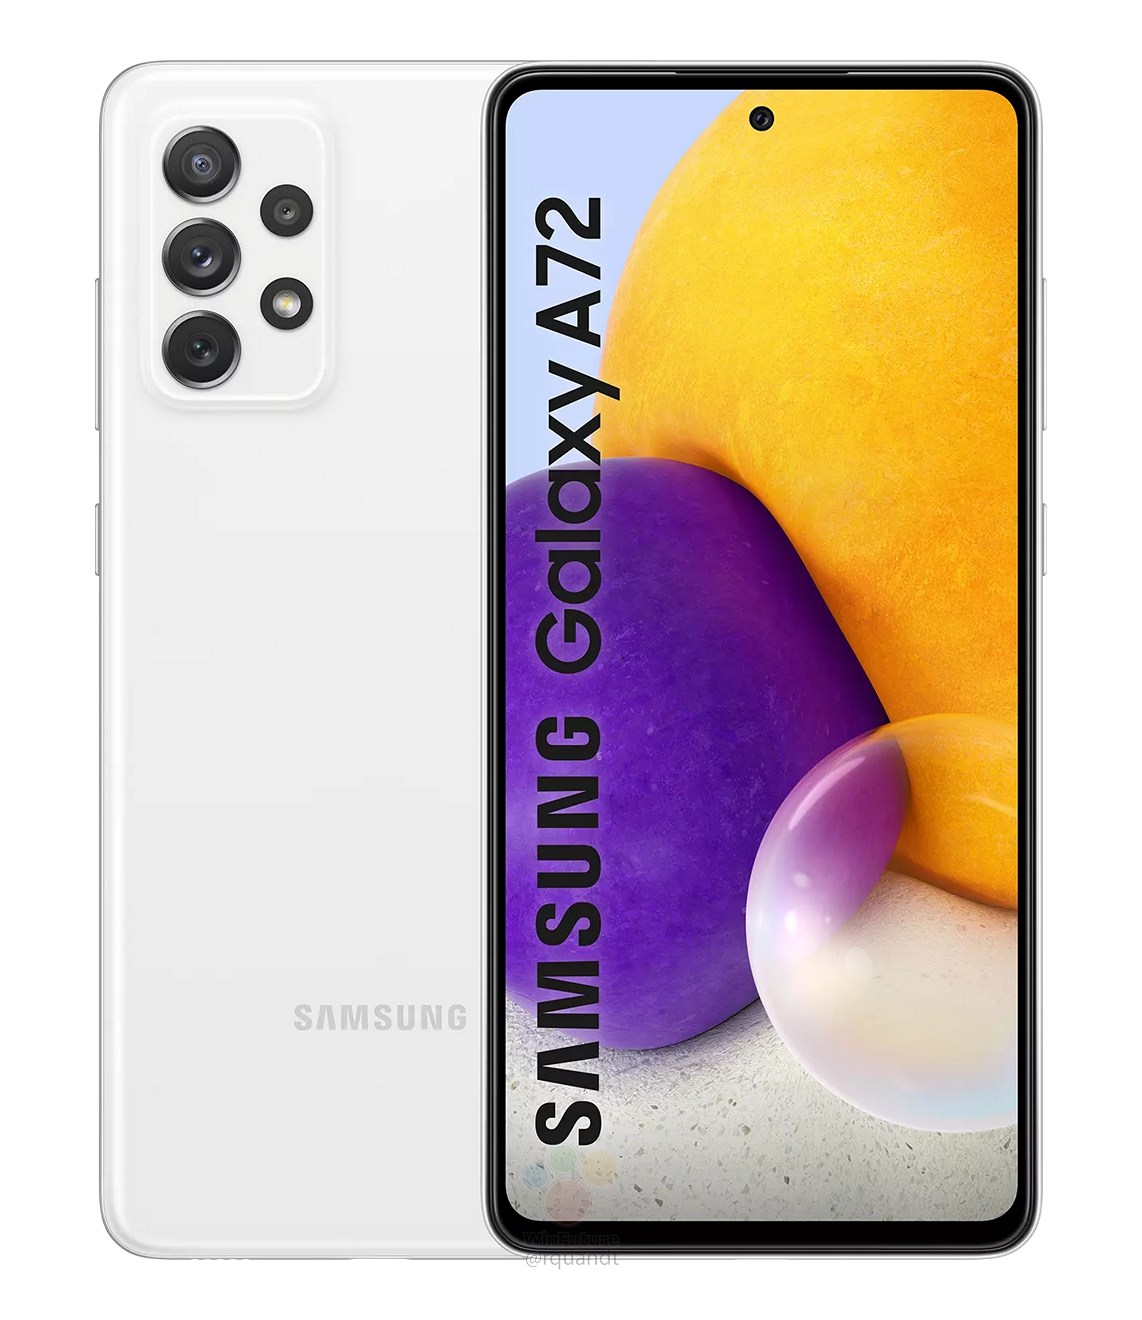 Samsung-Galaxy-A72-1613212700-0-0.jpg